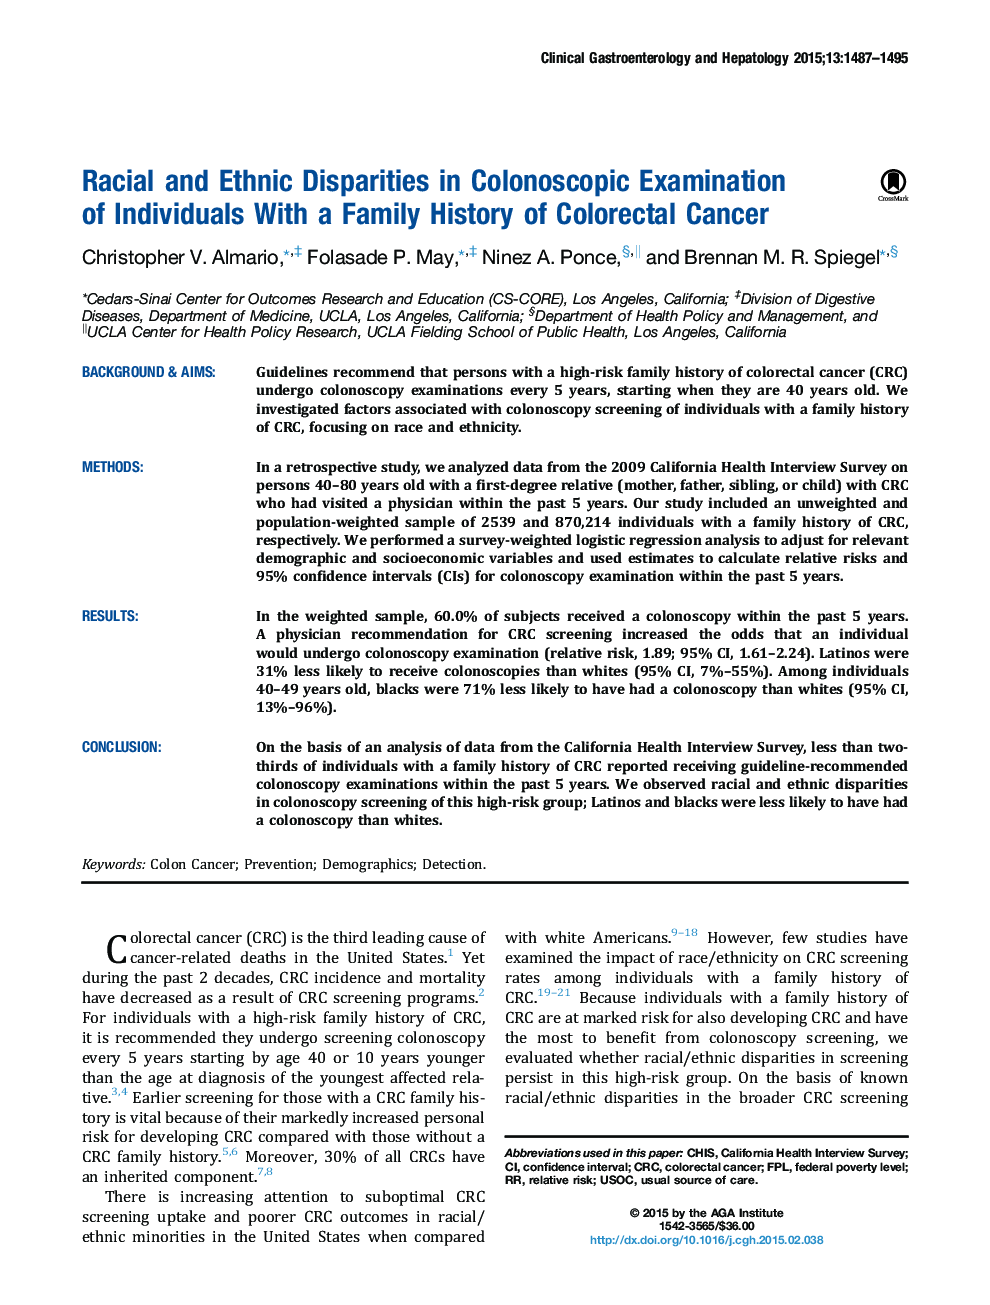 اختلافات نژادی و قومی در بررسی کلونوسکوپی افراد با تاریخچه خانوادگی سرطان کولورکتال 